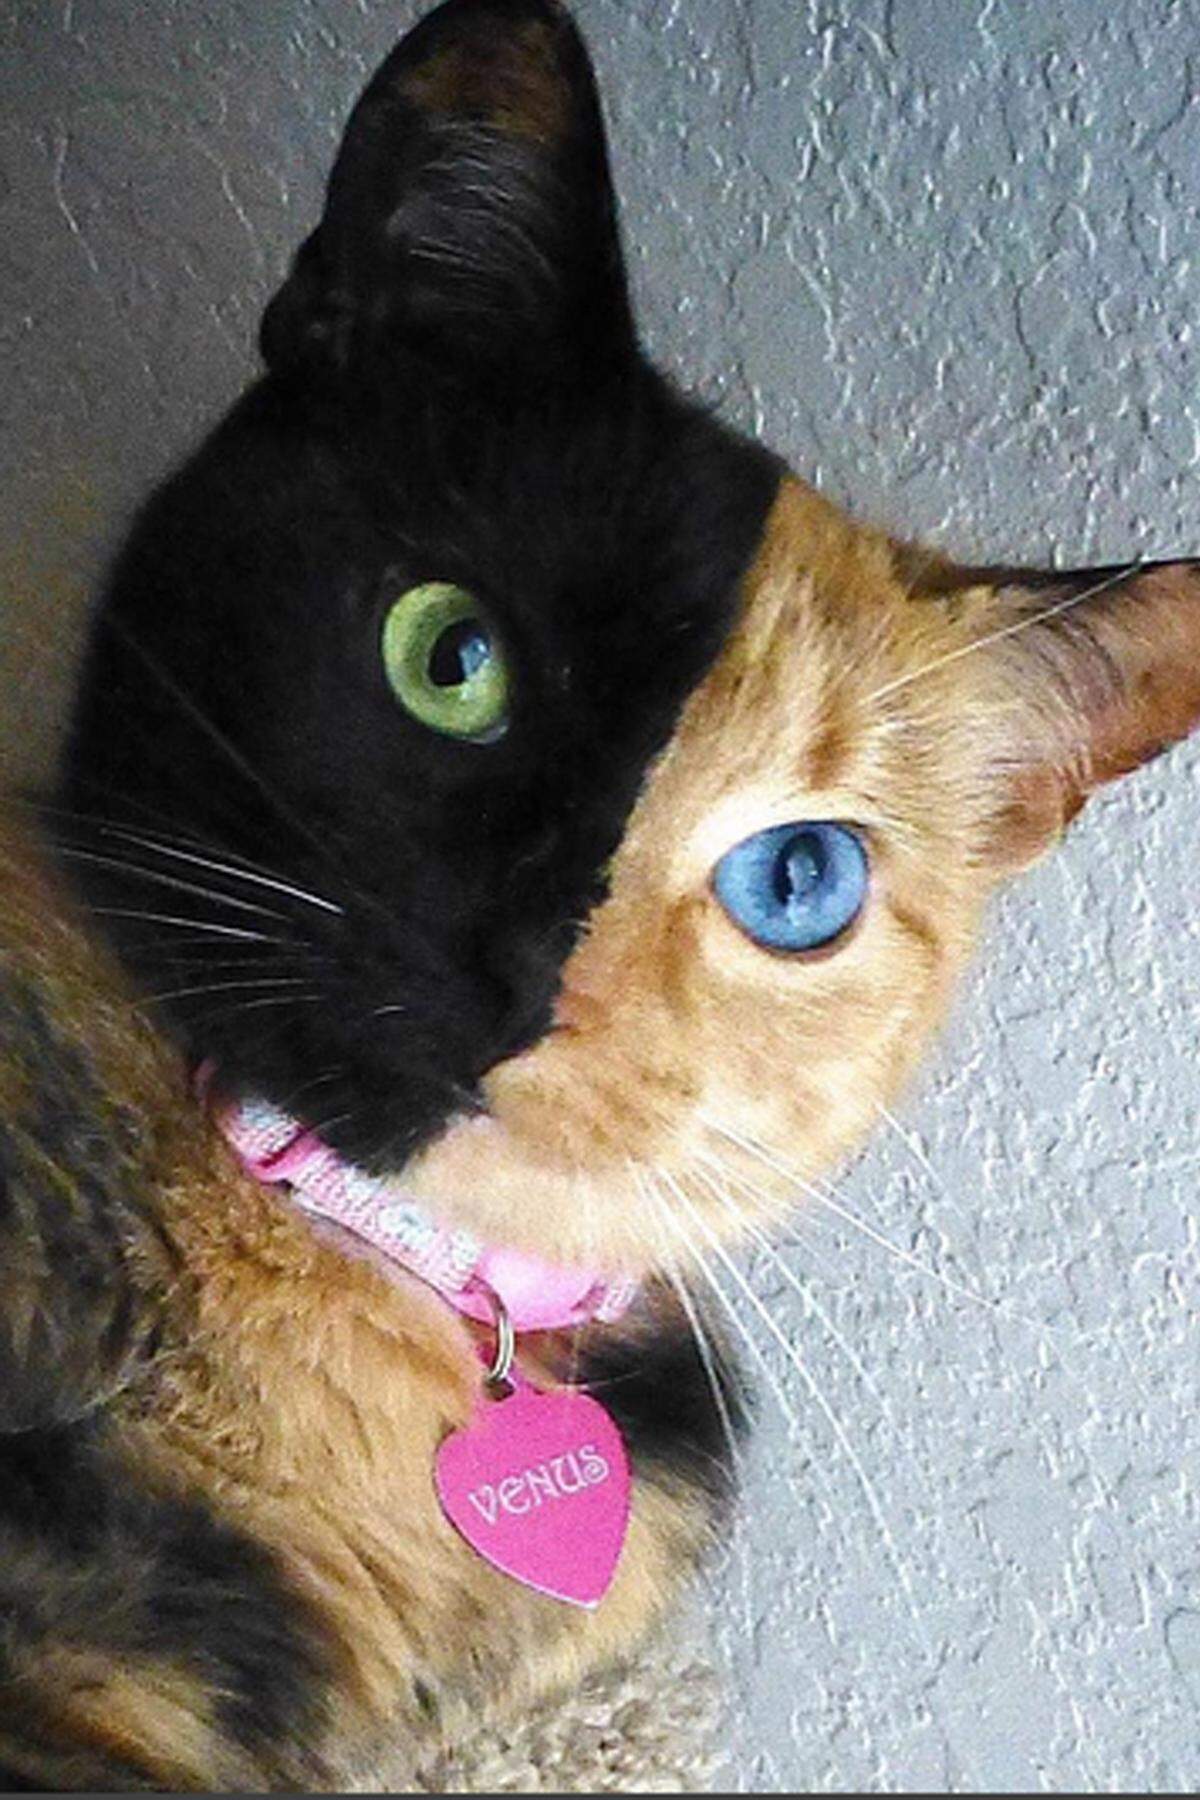 Ein Wunder der Natur scheint Venus zu sein. Die Katze ist mit zwei unterschiedlichen Gesichtshälften geboren. Aus ihrem halb schwarz und halb rotem Gesicht leuchten einem jeweils ein grünes und ein blaues Auge entgegen. Wissenschaftlich gesehen ist Venus eine sogenannte Kaliko-Katze. Dank 1,3 Millionen Bewunderer auf Instagram ist die außergewöhnliche Samtpfote mittlerweile eine Internetberühmtheit.